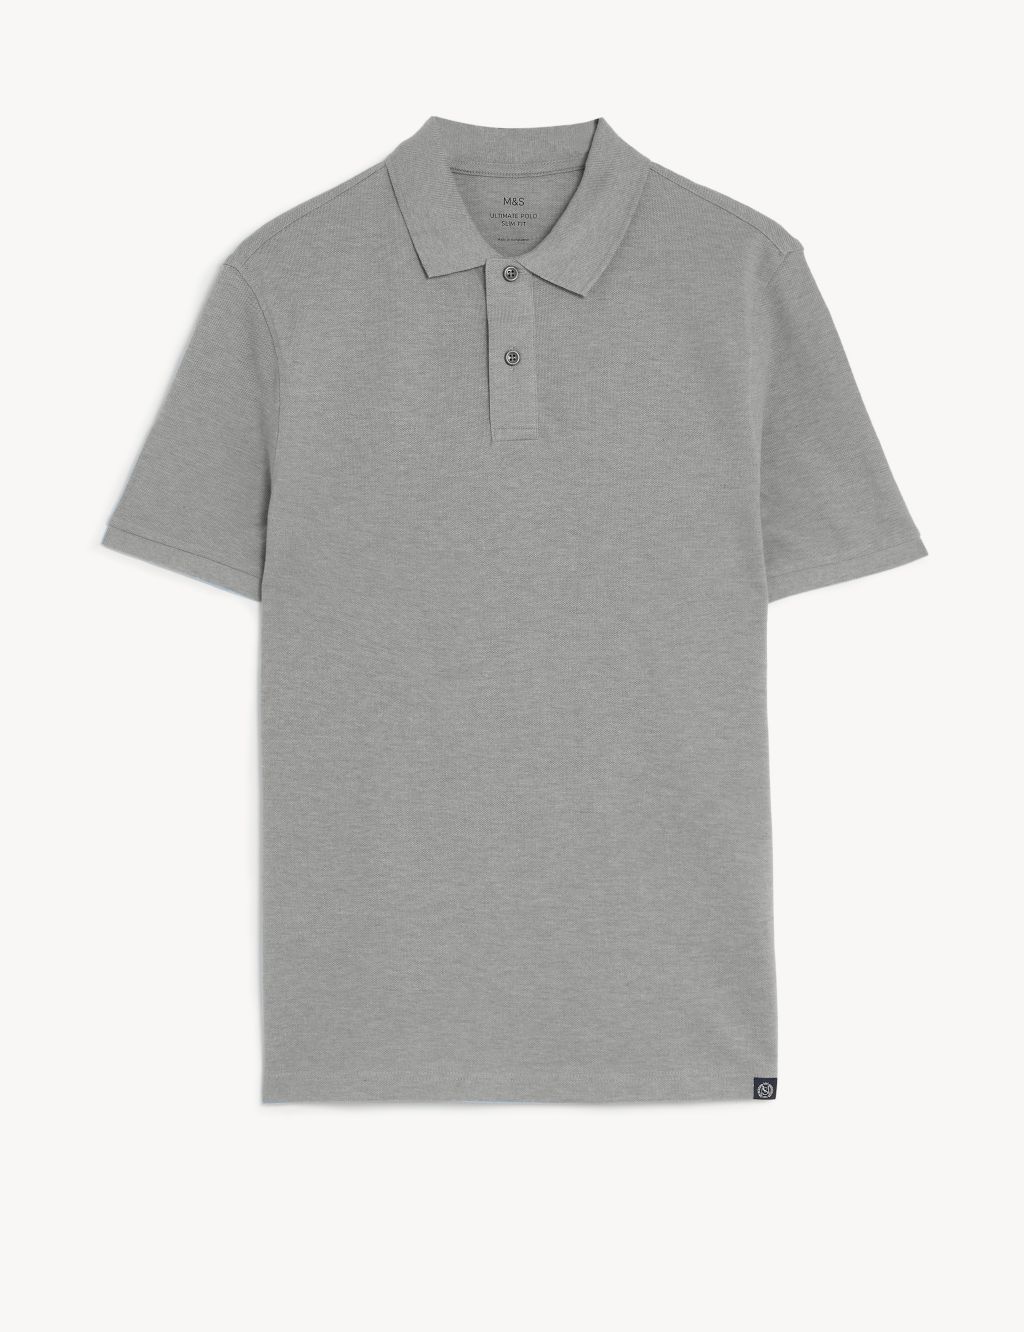 Slim Fit Pure Cotton Pique Polo Shirt image 2